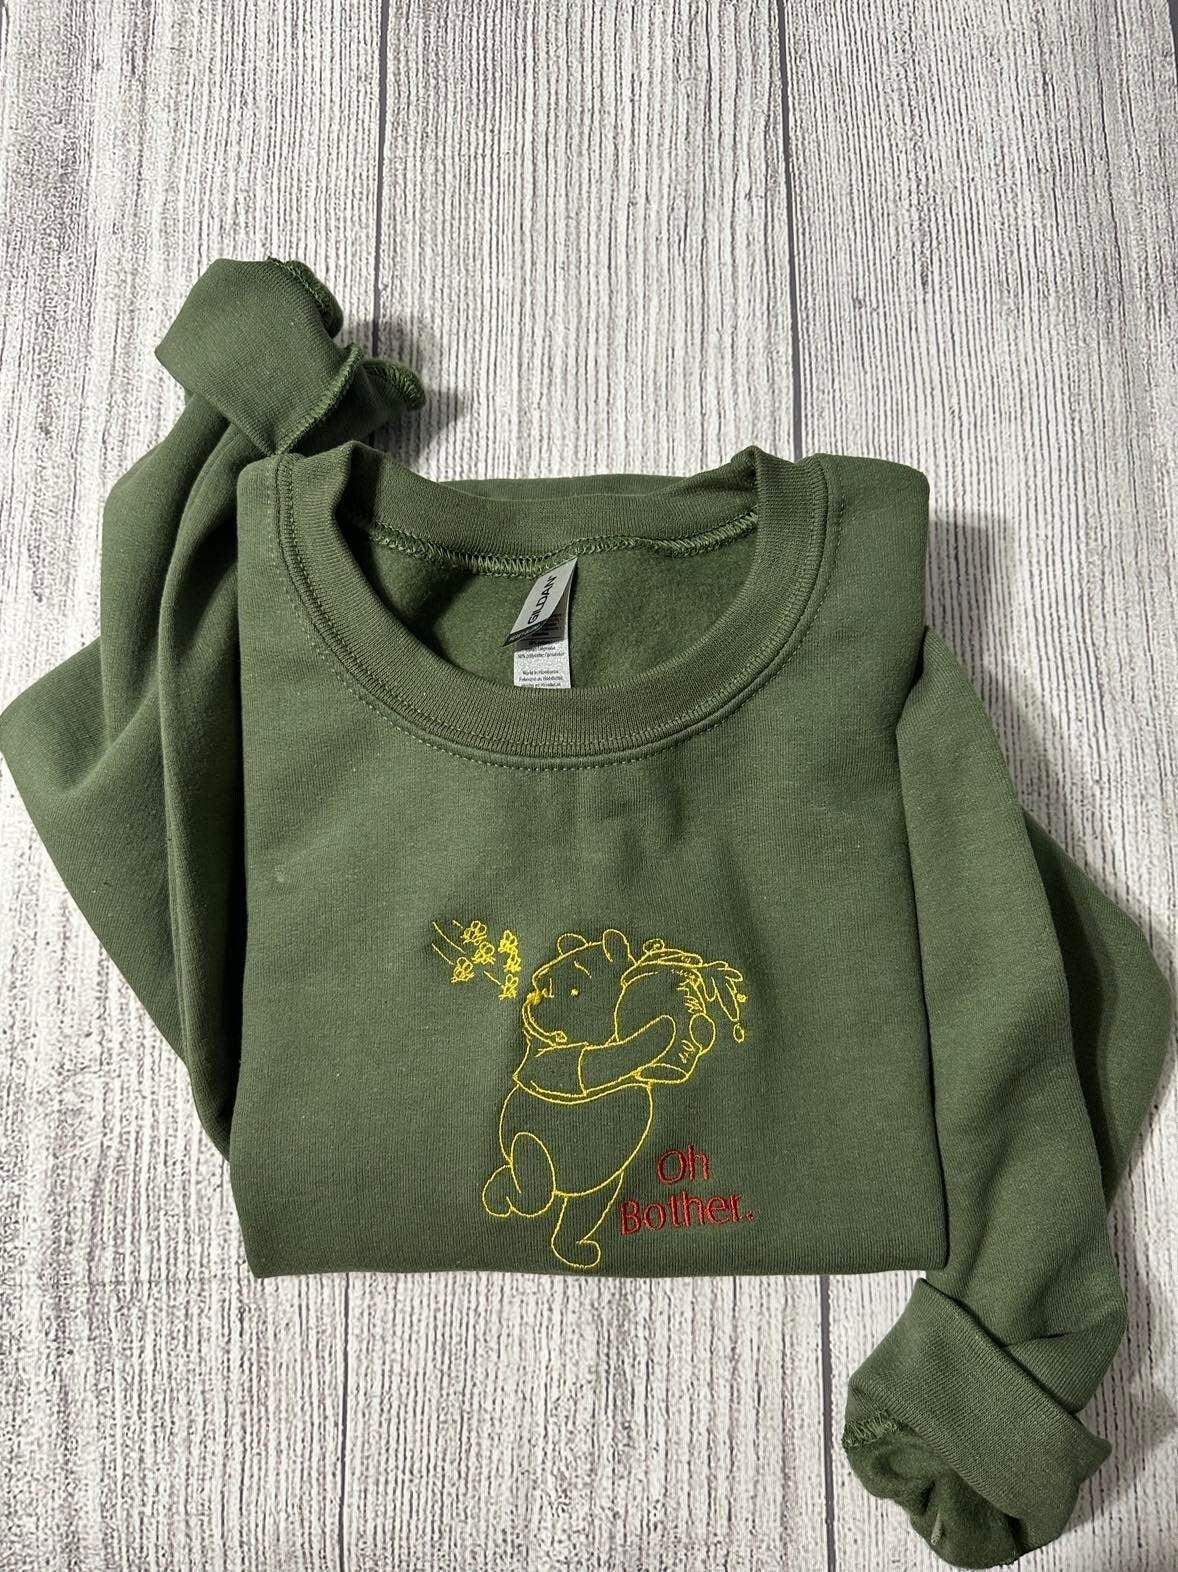 Winnie the Pooh Embroidered sweatshirt; Winnie the Pooh Embroidery crewneck; oh bother embroidered sweater